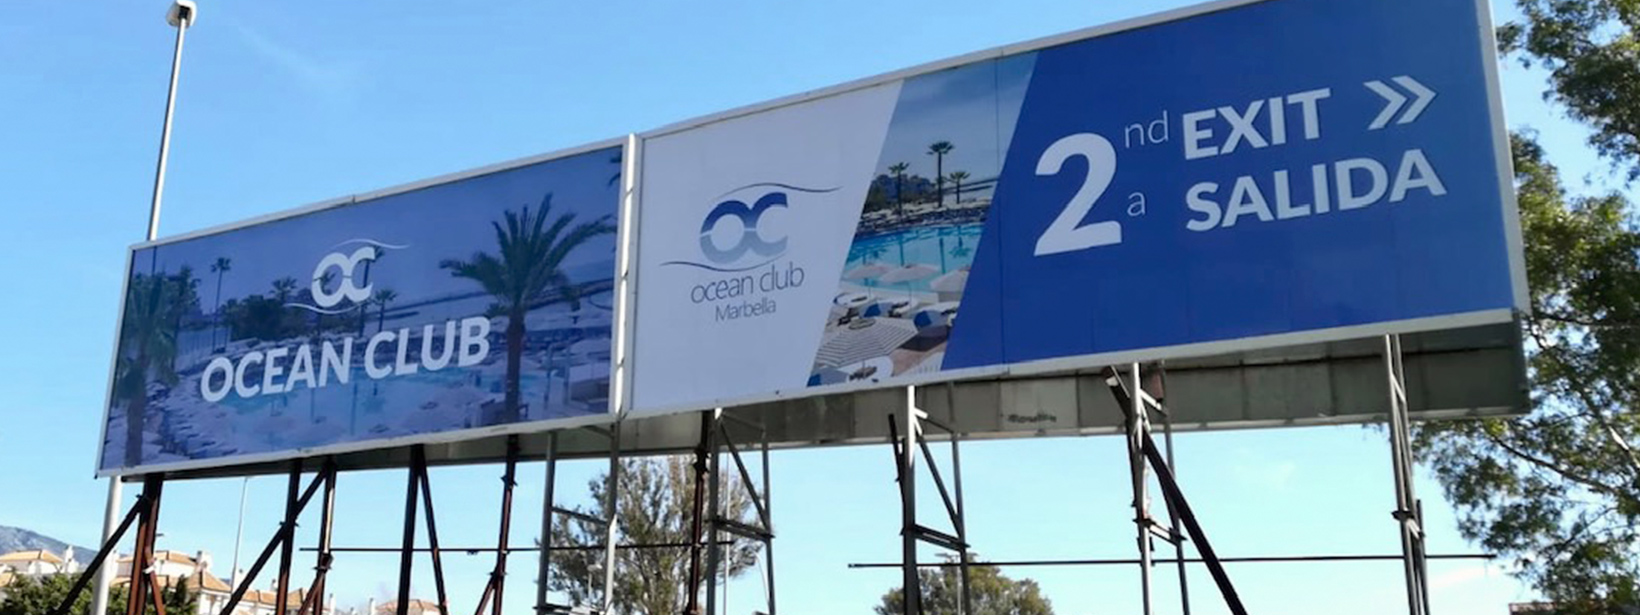 Valla publicitaria doble de 16x3 metros en Marbella a tan solo 400 metros de Puerto Banús